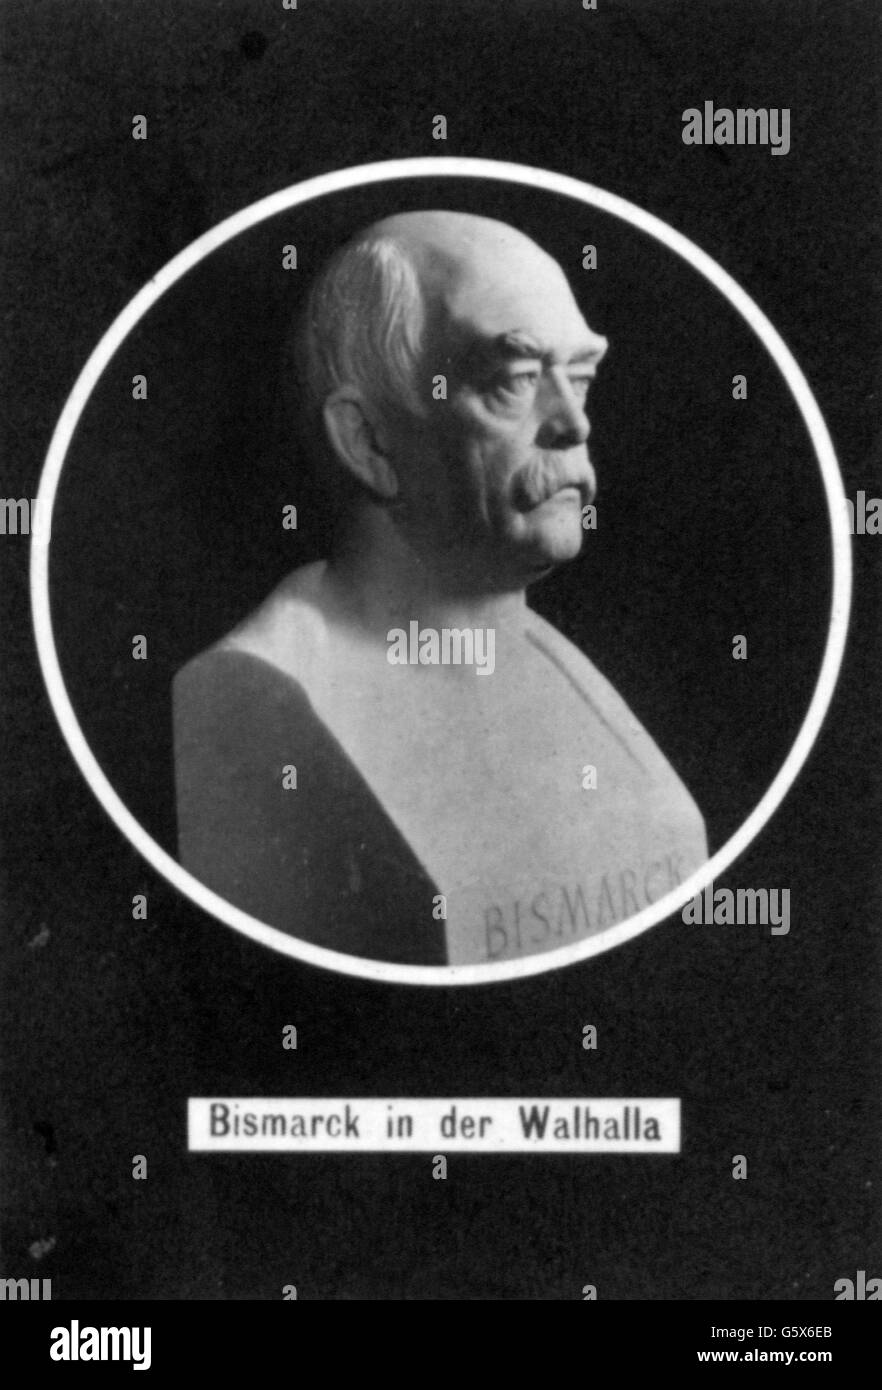 Bismarck, Otto von, 1.4.1815 - 30.7.1898, German politician, portrait, bust by Kurz, 1908, Walhalla, Stock Photo